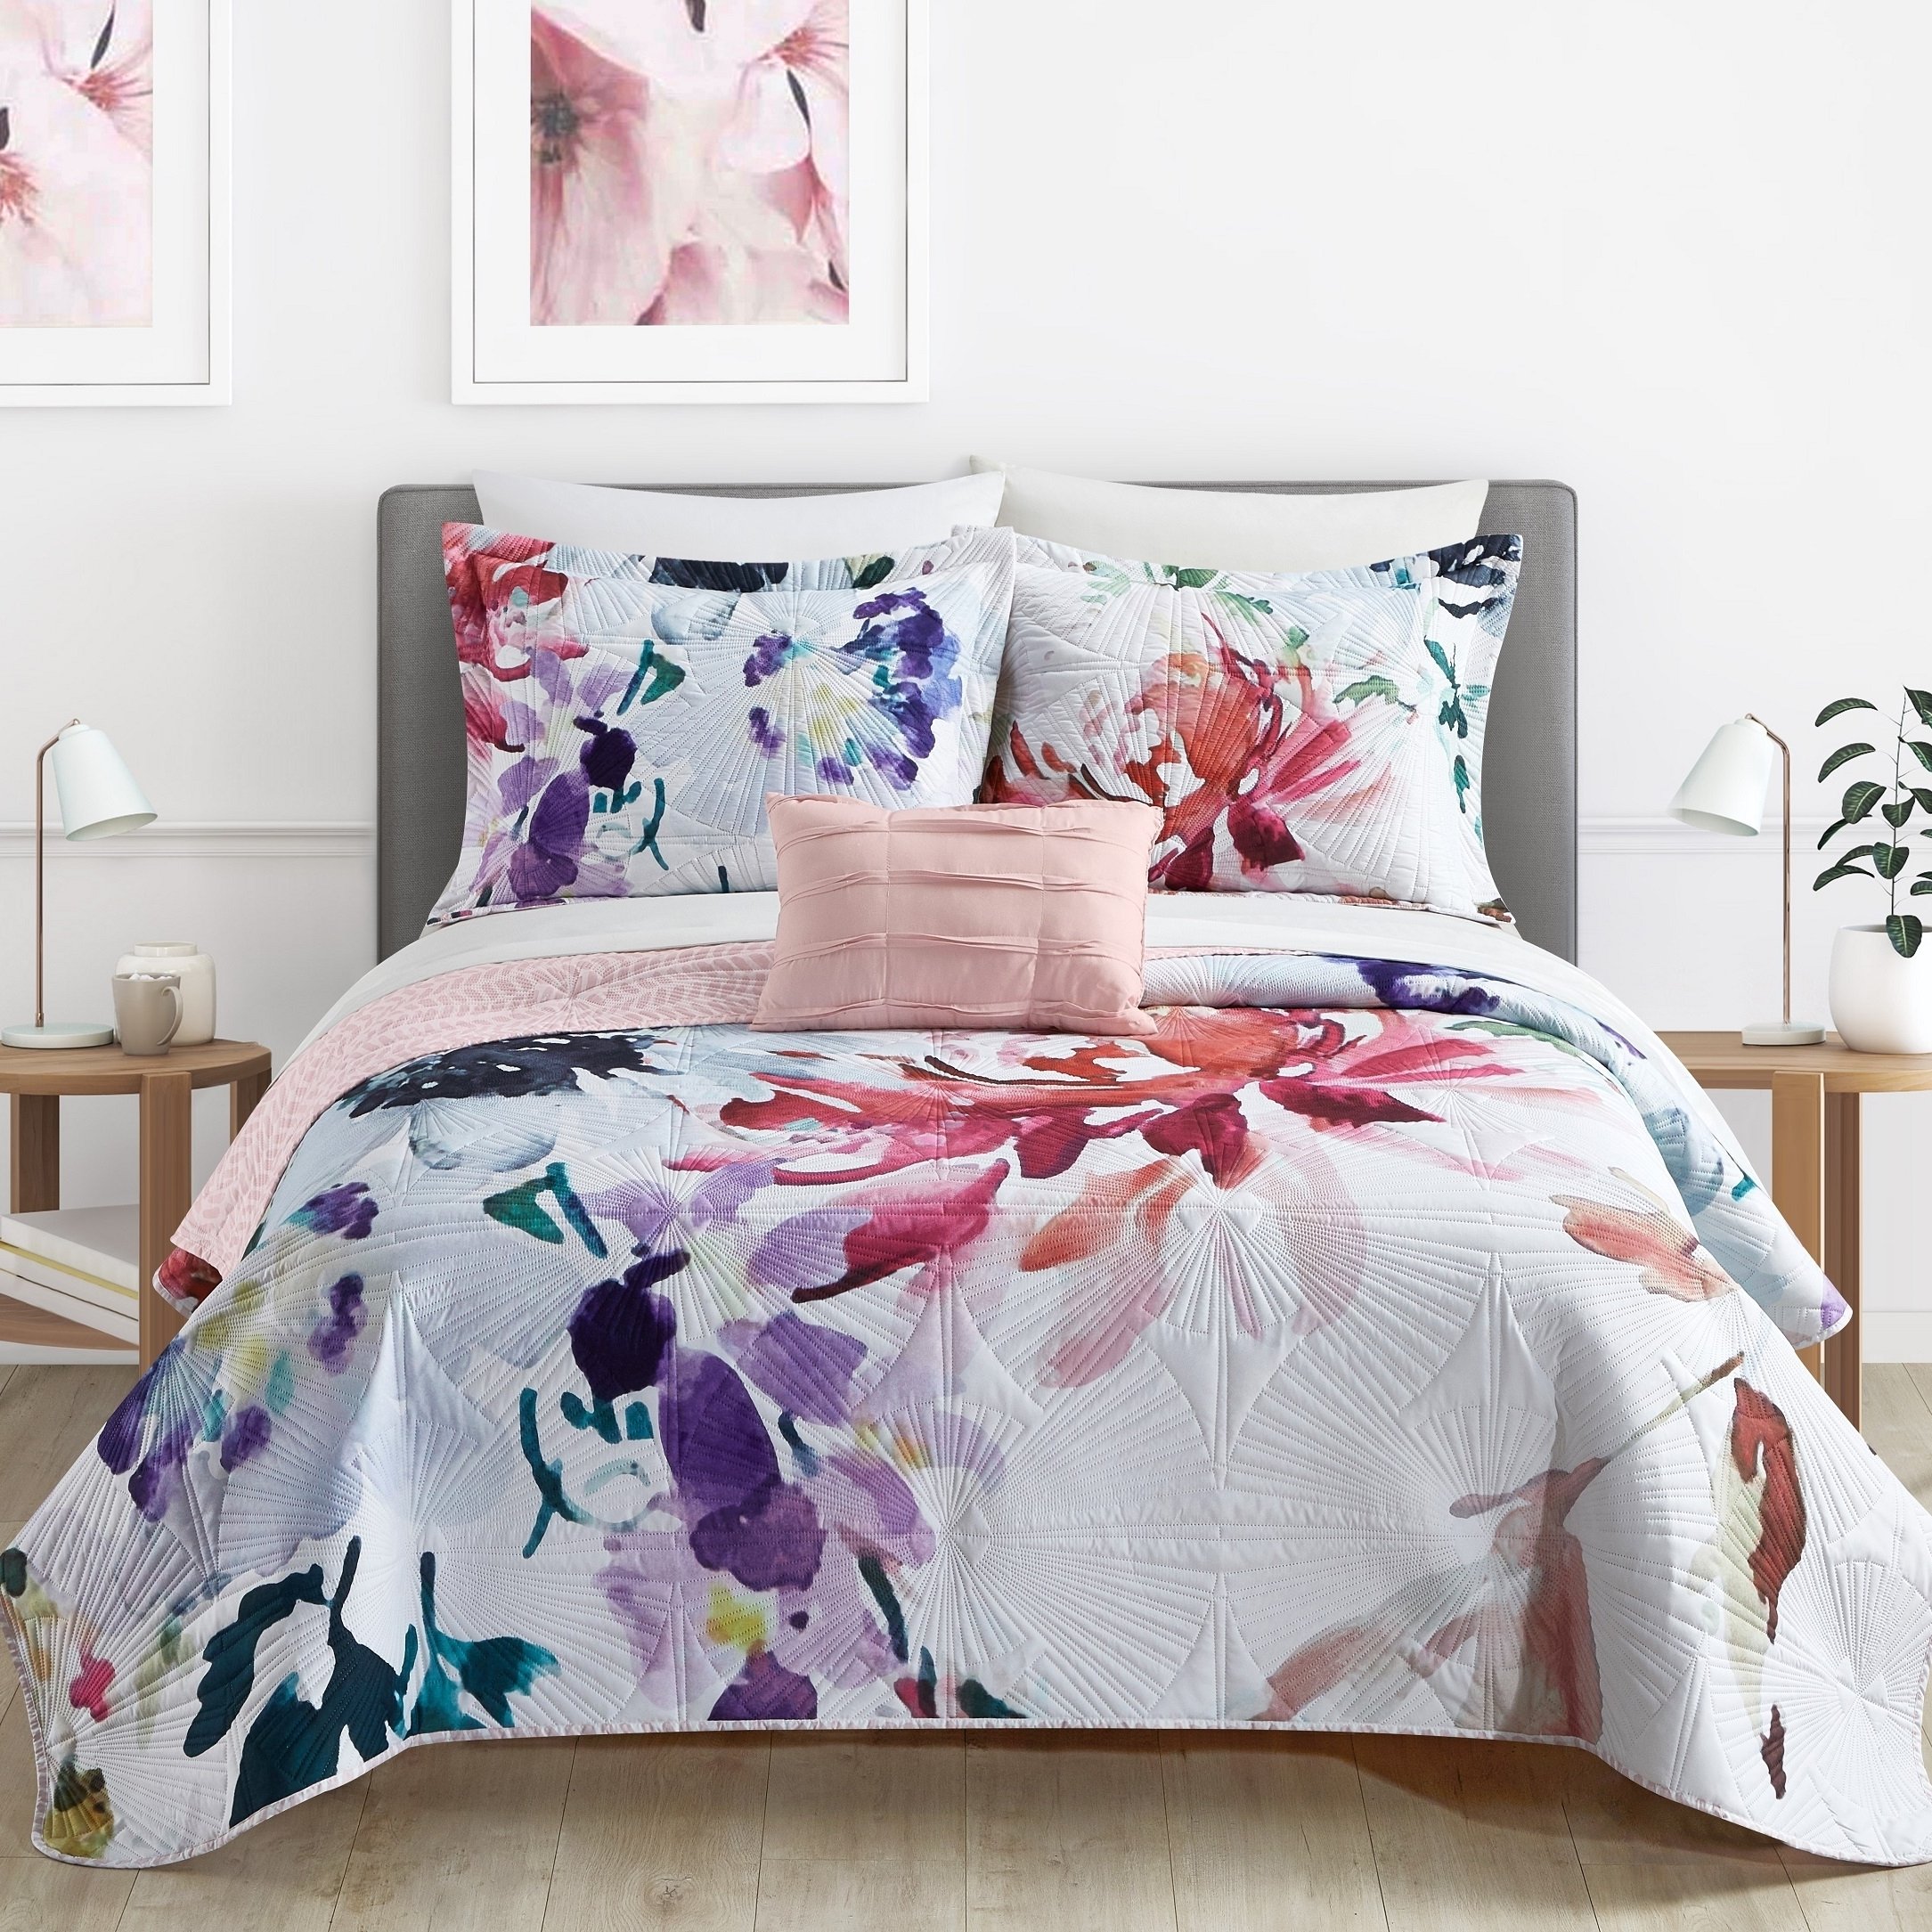 Ateus Palace 3 Or 4Piece Reversible Quilt Set Floral Watercolor Design Bedding - Mateus Purple, Queen (4 Piece)